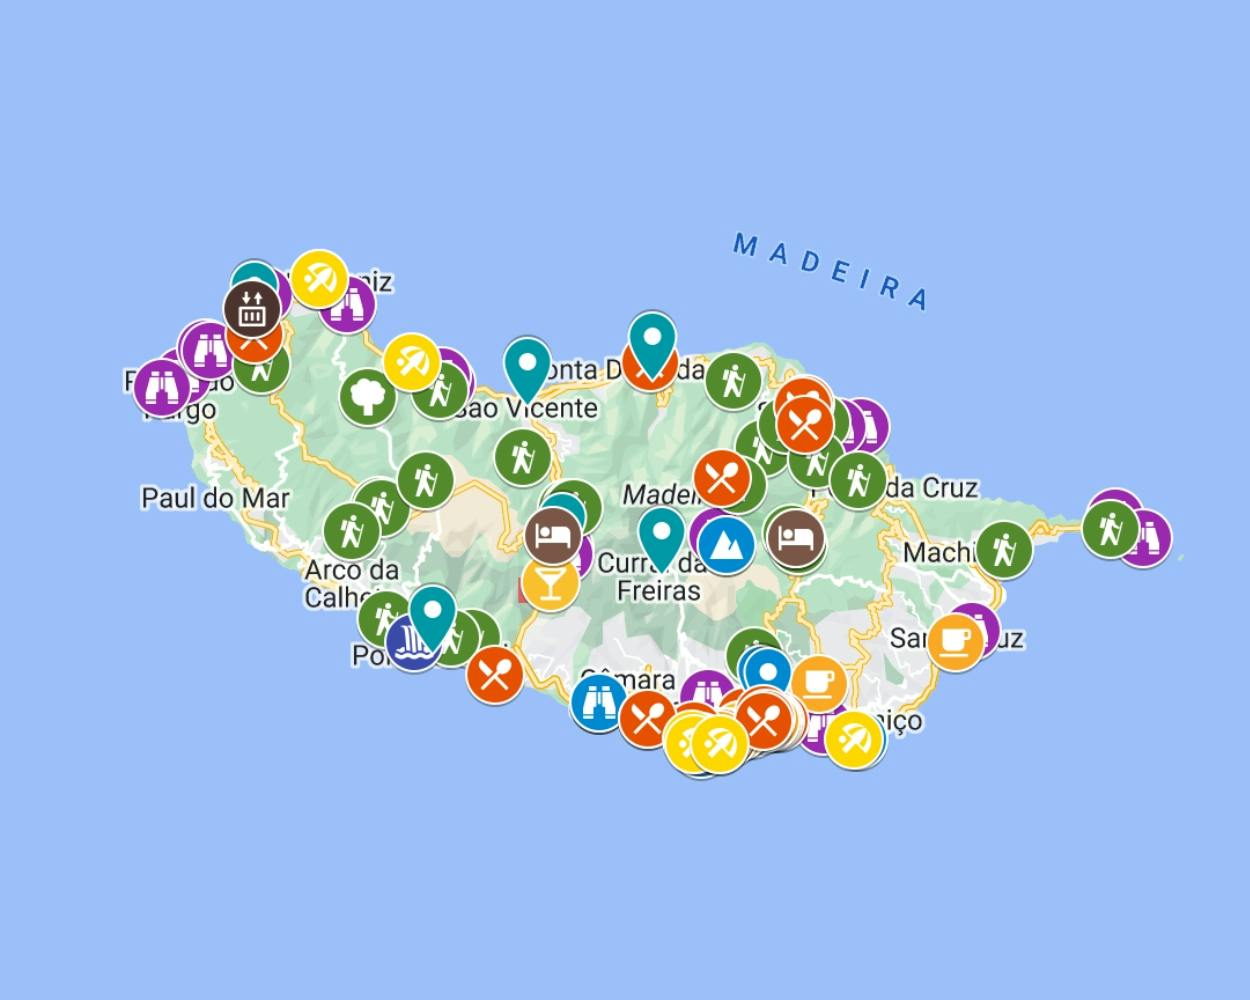 Madeira Maps